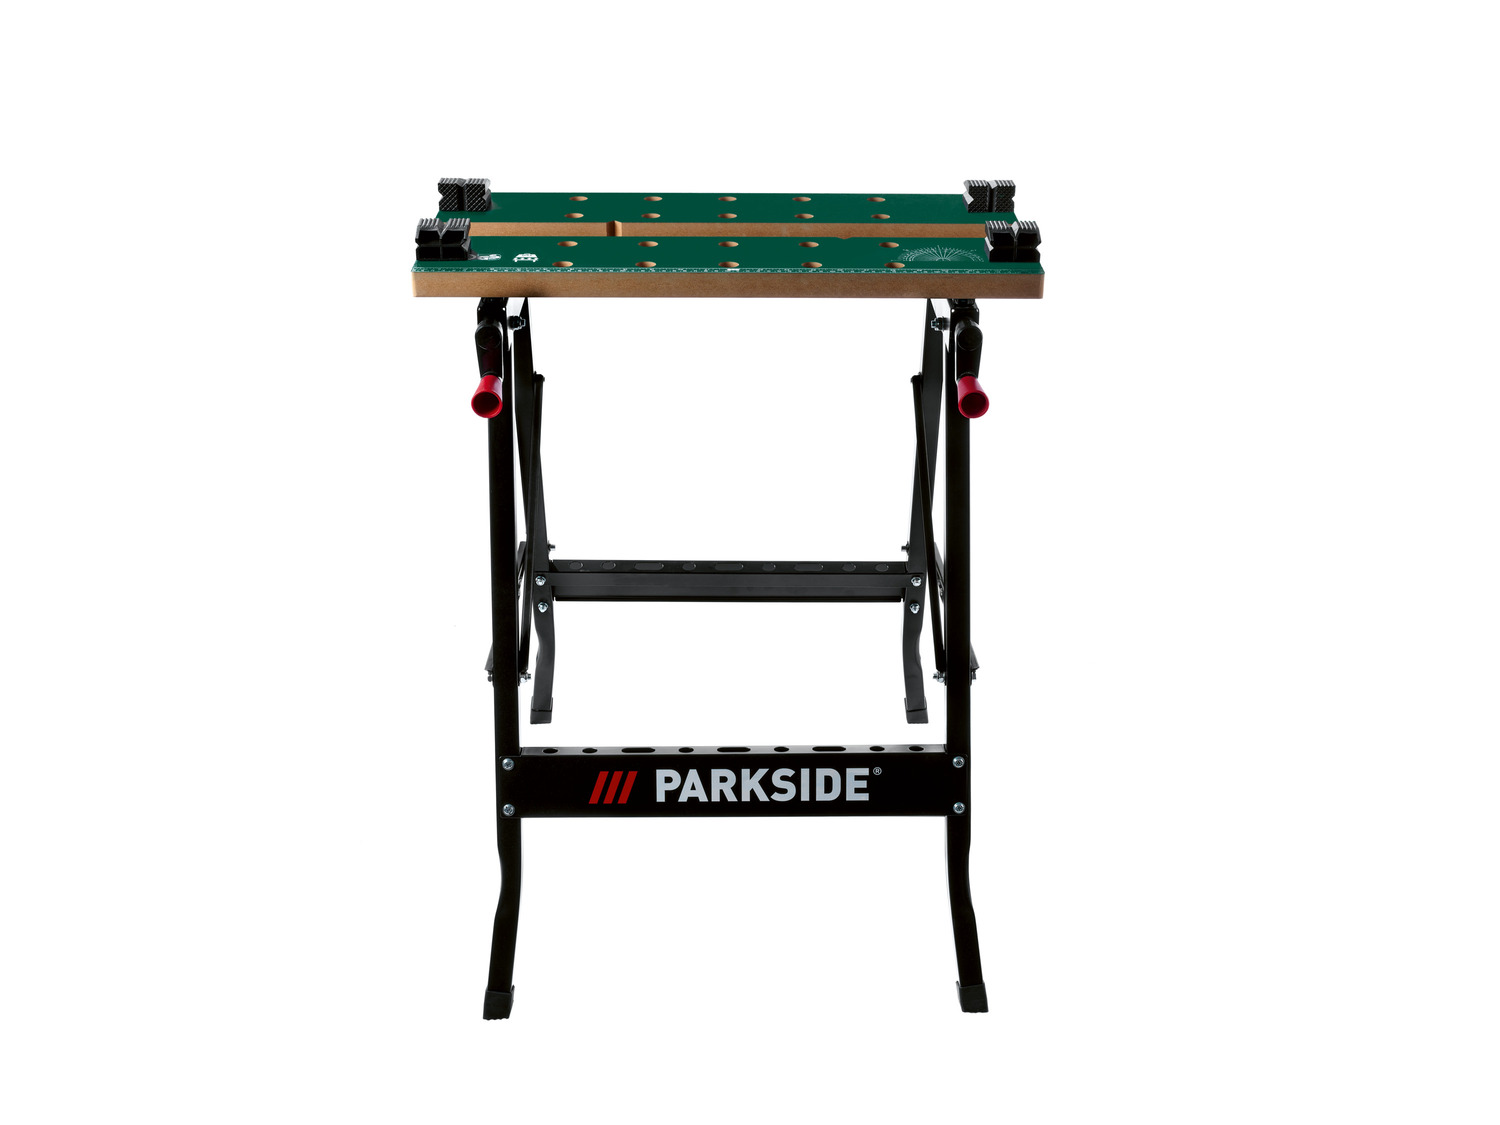 ParkSide univerzális ragasztórúd átlátszó 20db/csomag Ø7mm-es –  PNKPZ3B2 DEKORÁCIÓ Parkside barkácsgép és szerszám webáruház